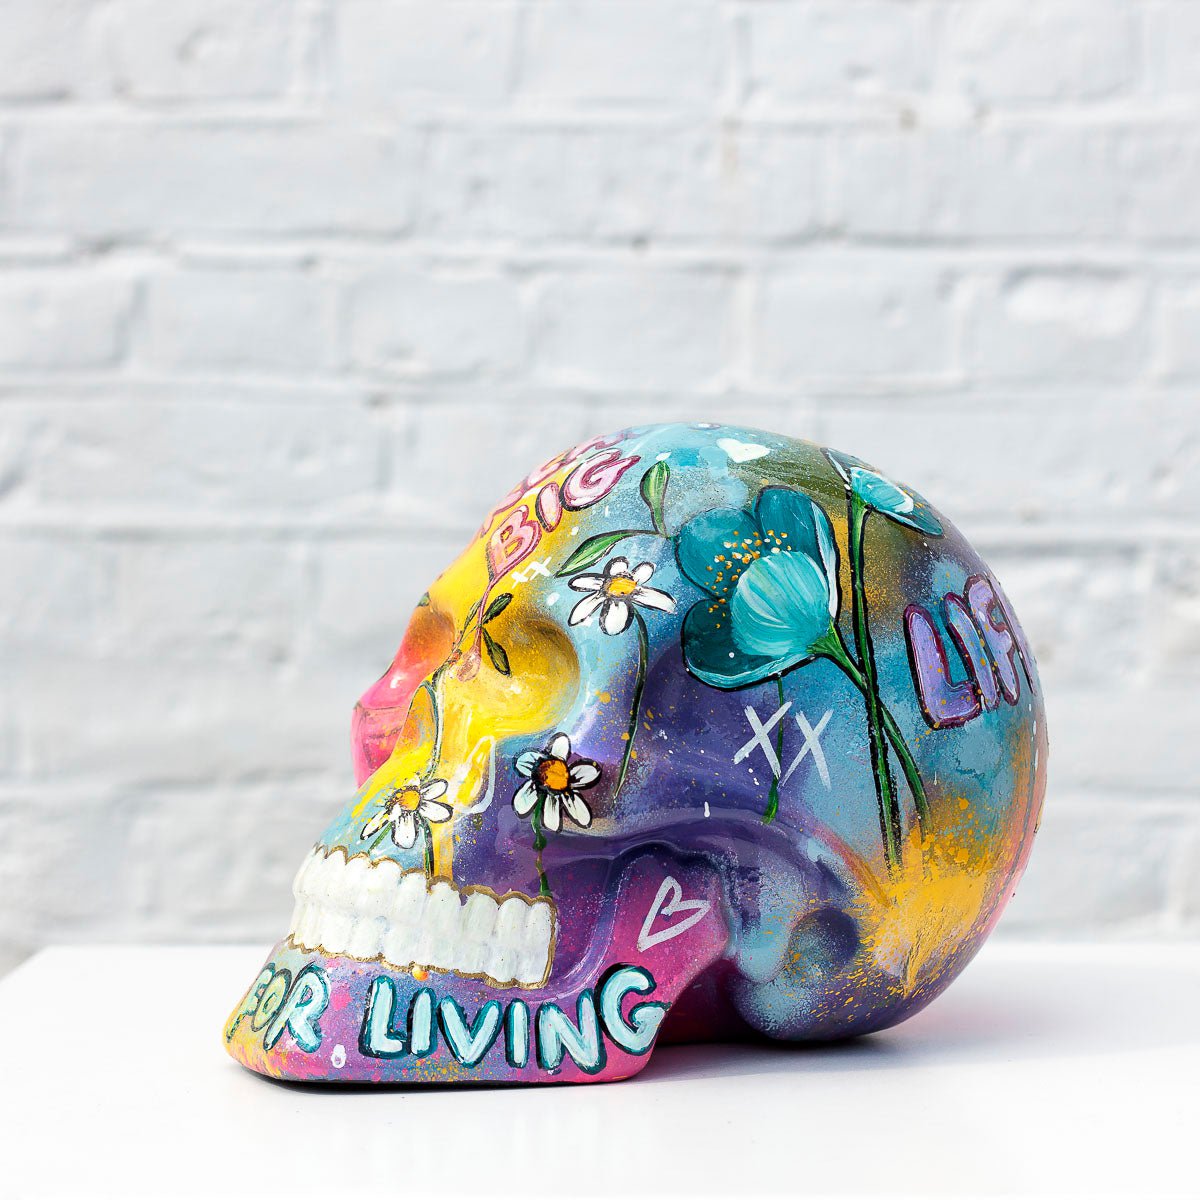 Life Is For Living - Original Sculpture Becky Smith Original